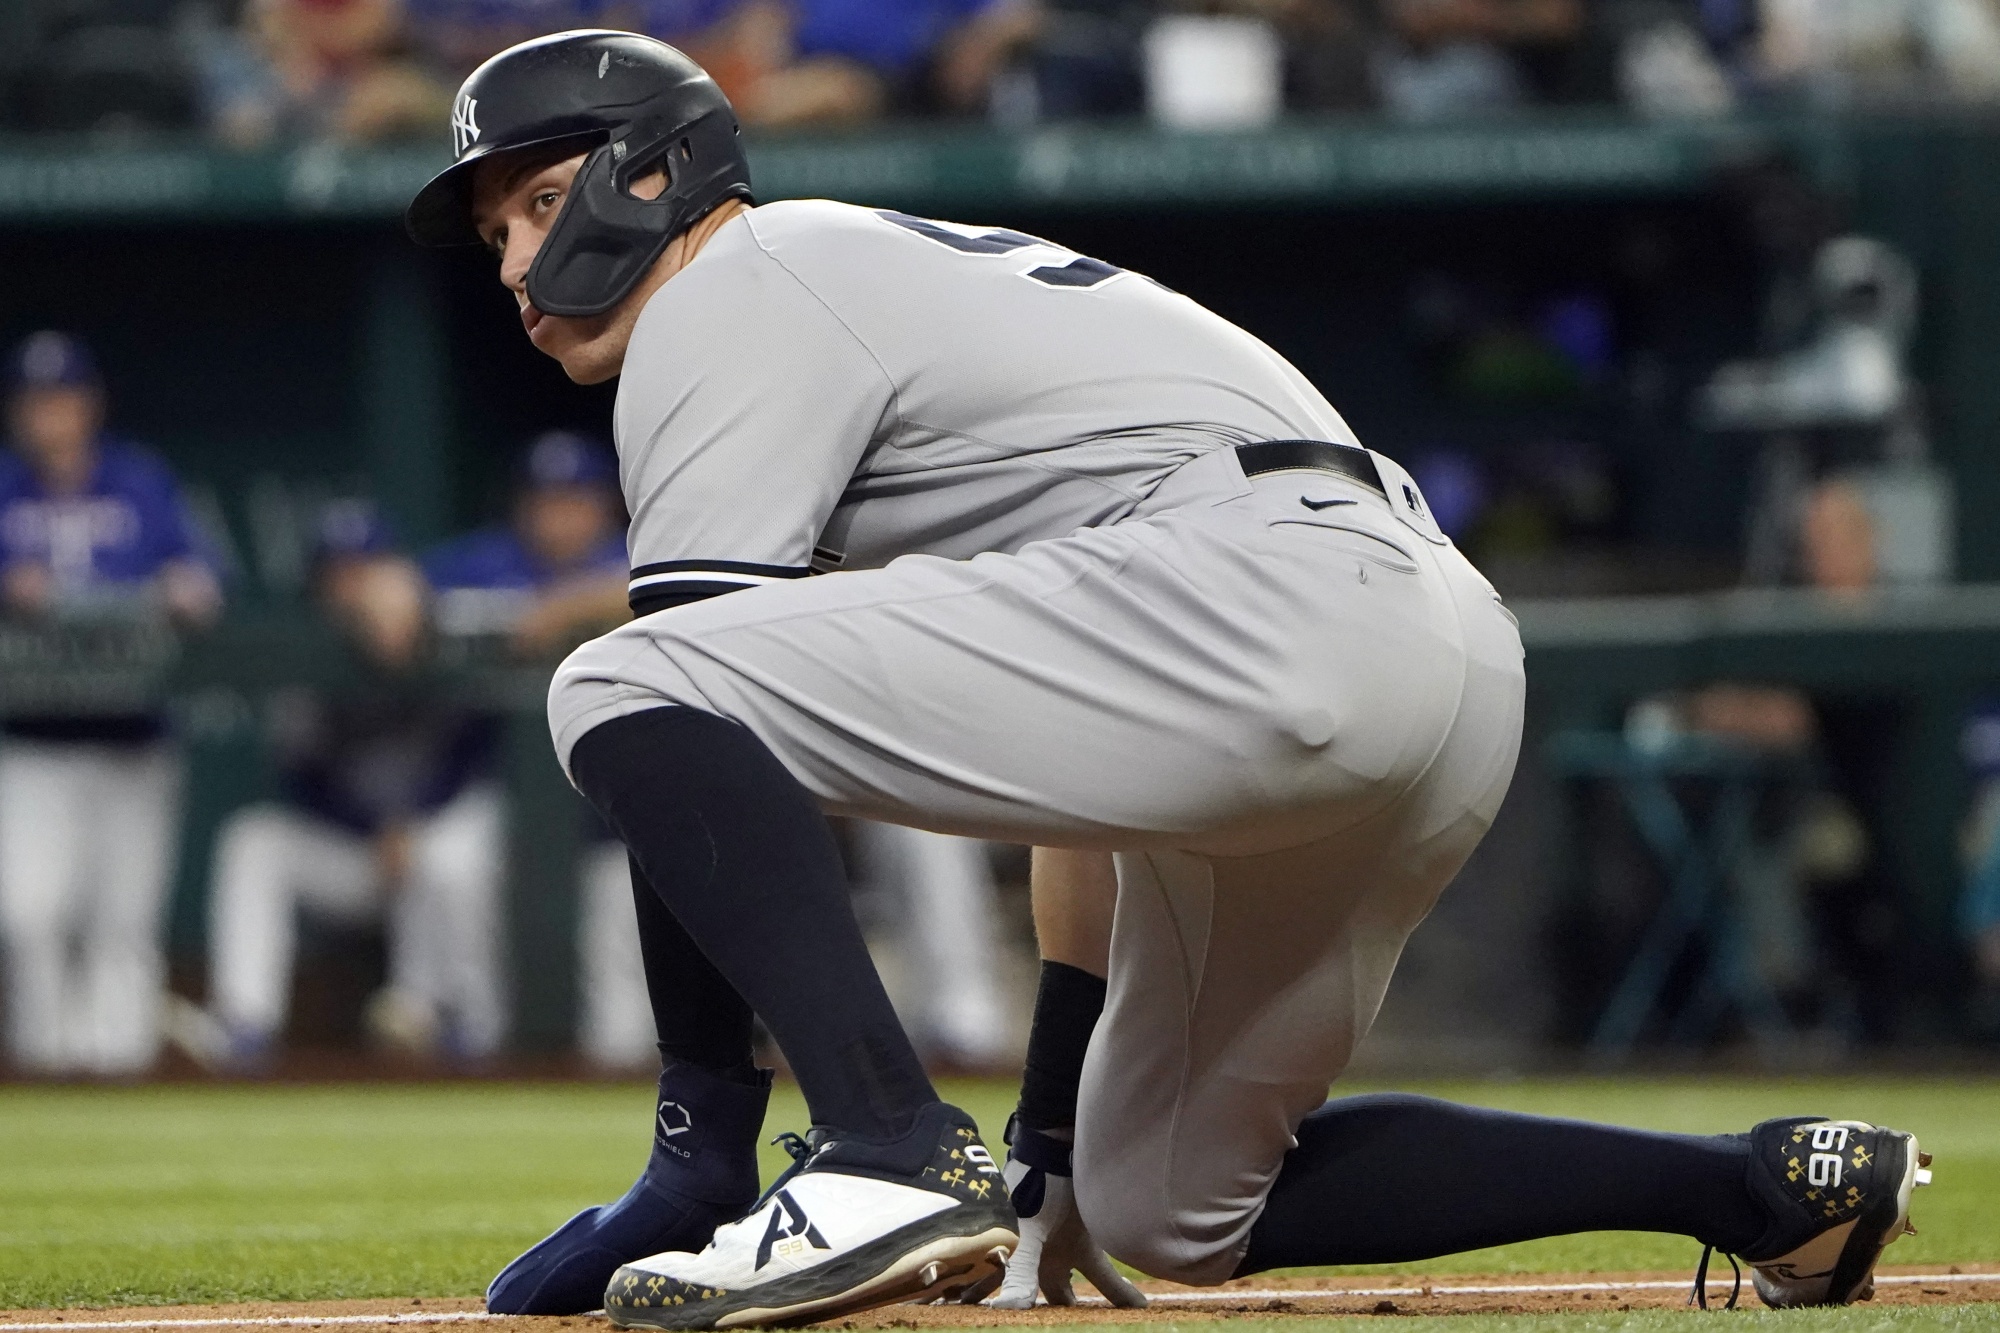 Yankees' Aaron Judge hits 62nd homer, breaks Roger Maris' AL record